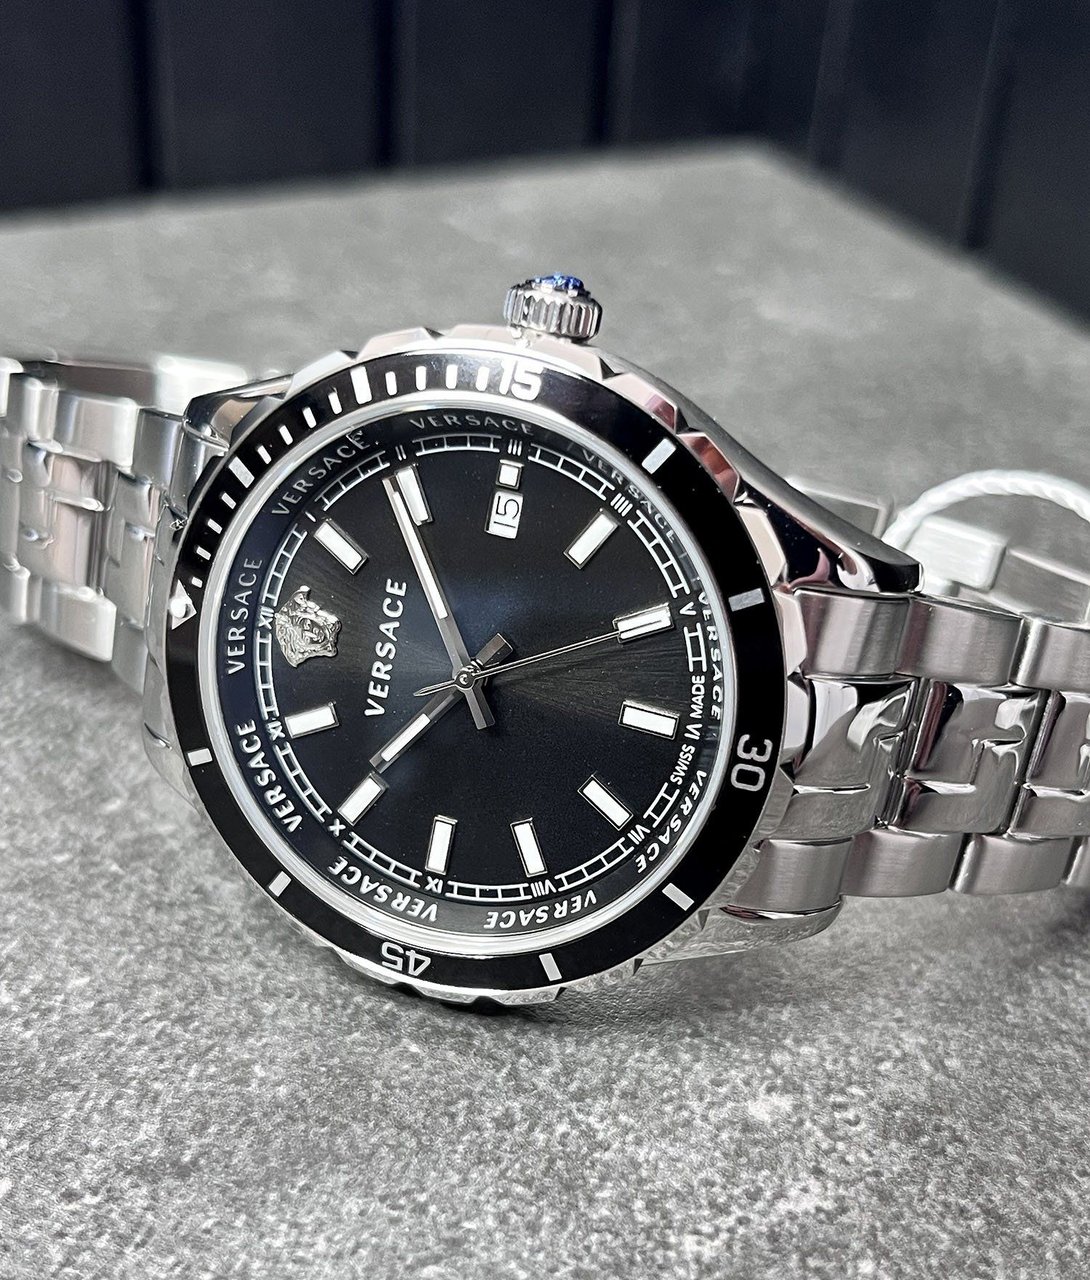 Versace VE3A00520 Hellenyium heren horloge 42 mm Zwart